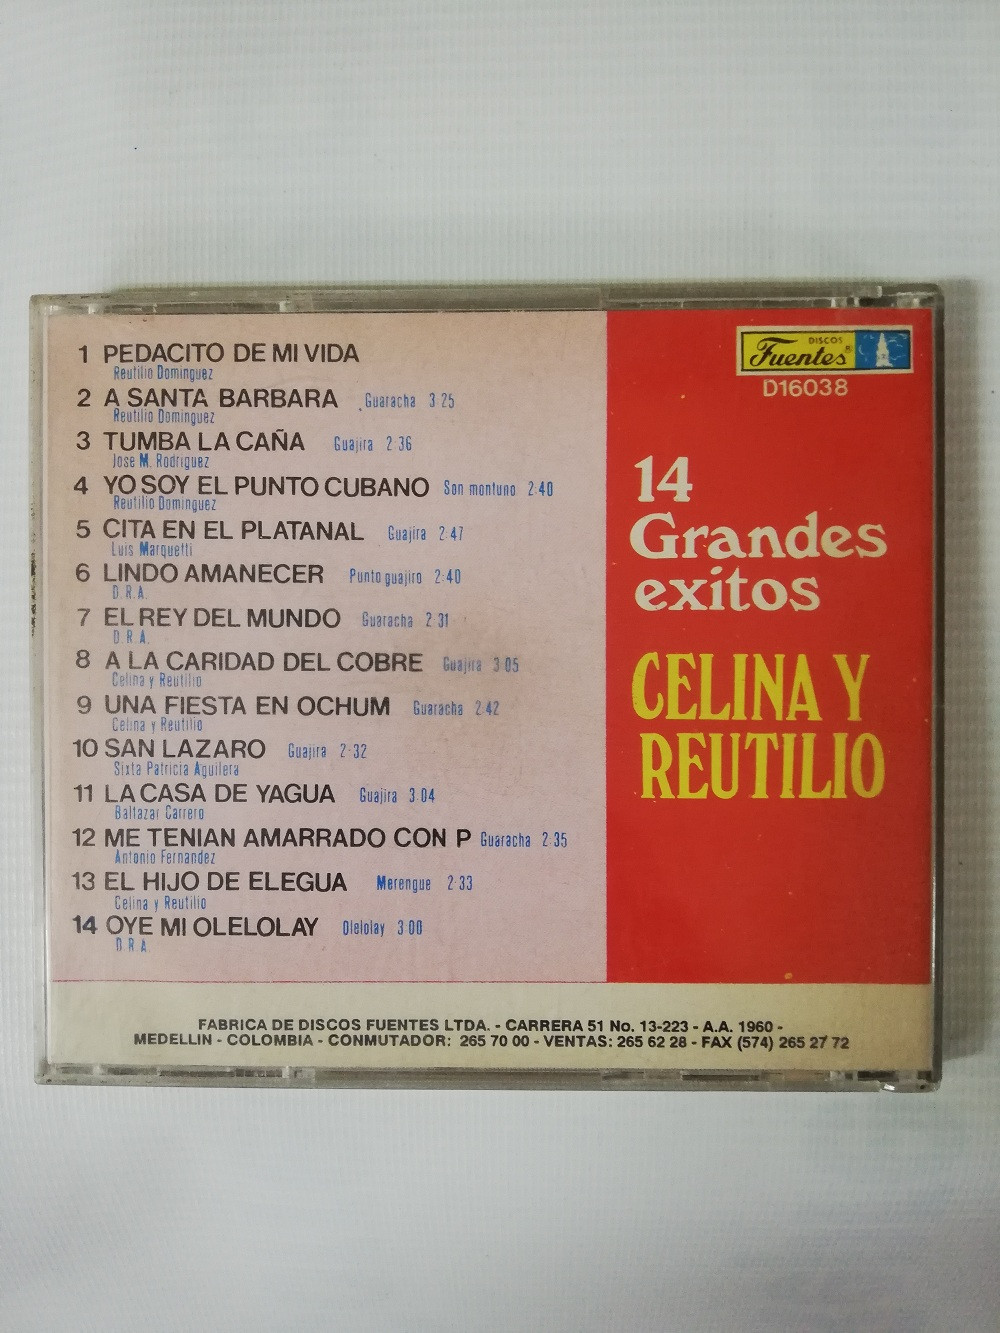 Imagen CD CELINA Y REUTILIO - 14 GRANDES EXITOS 2